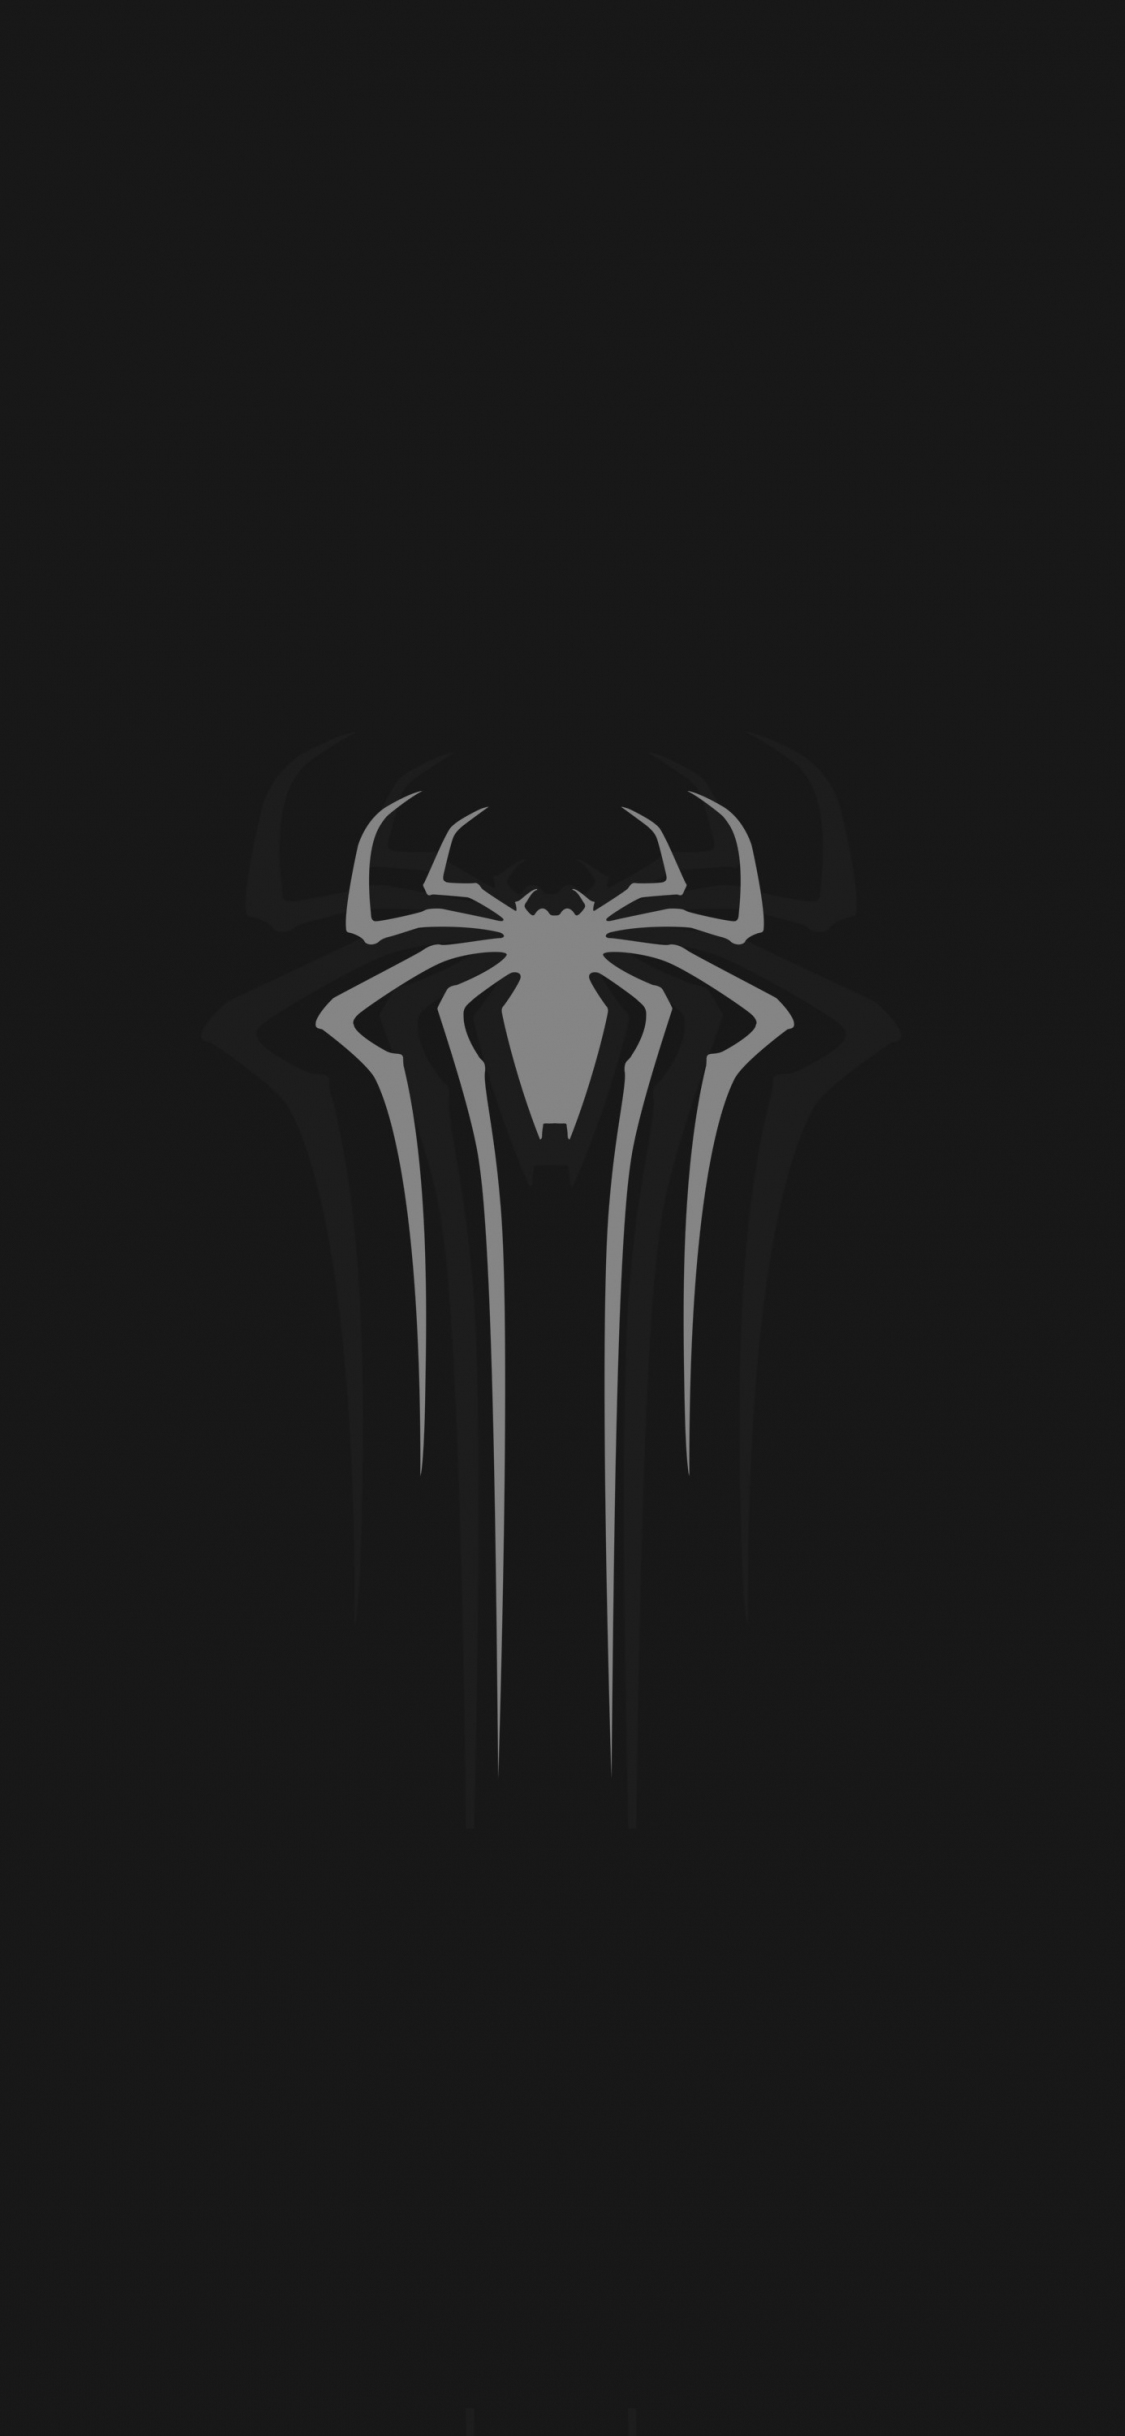 Spider-man black logo by Balsavor on DeviantArt